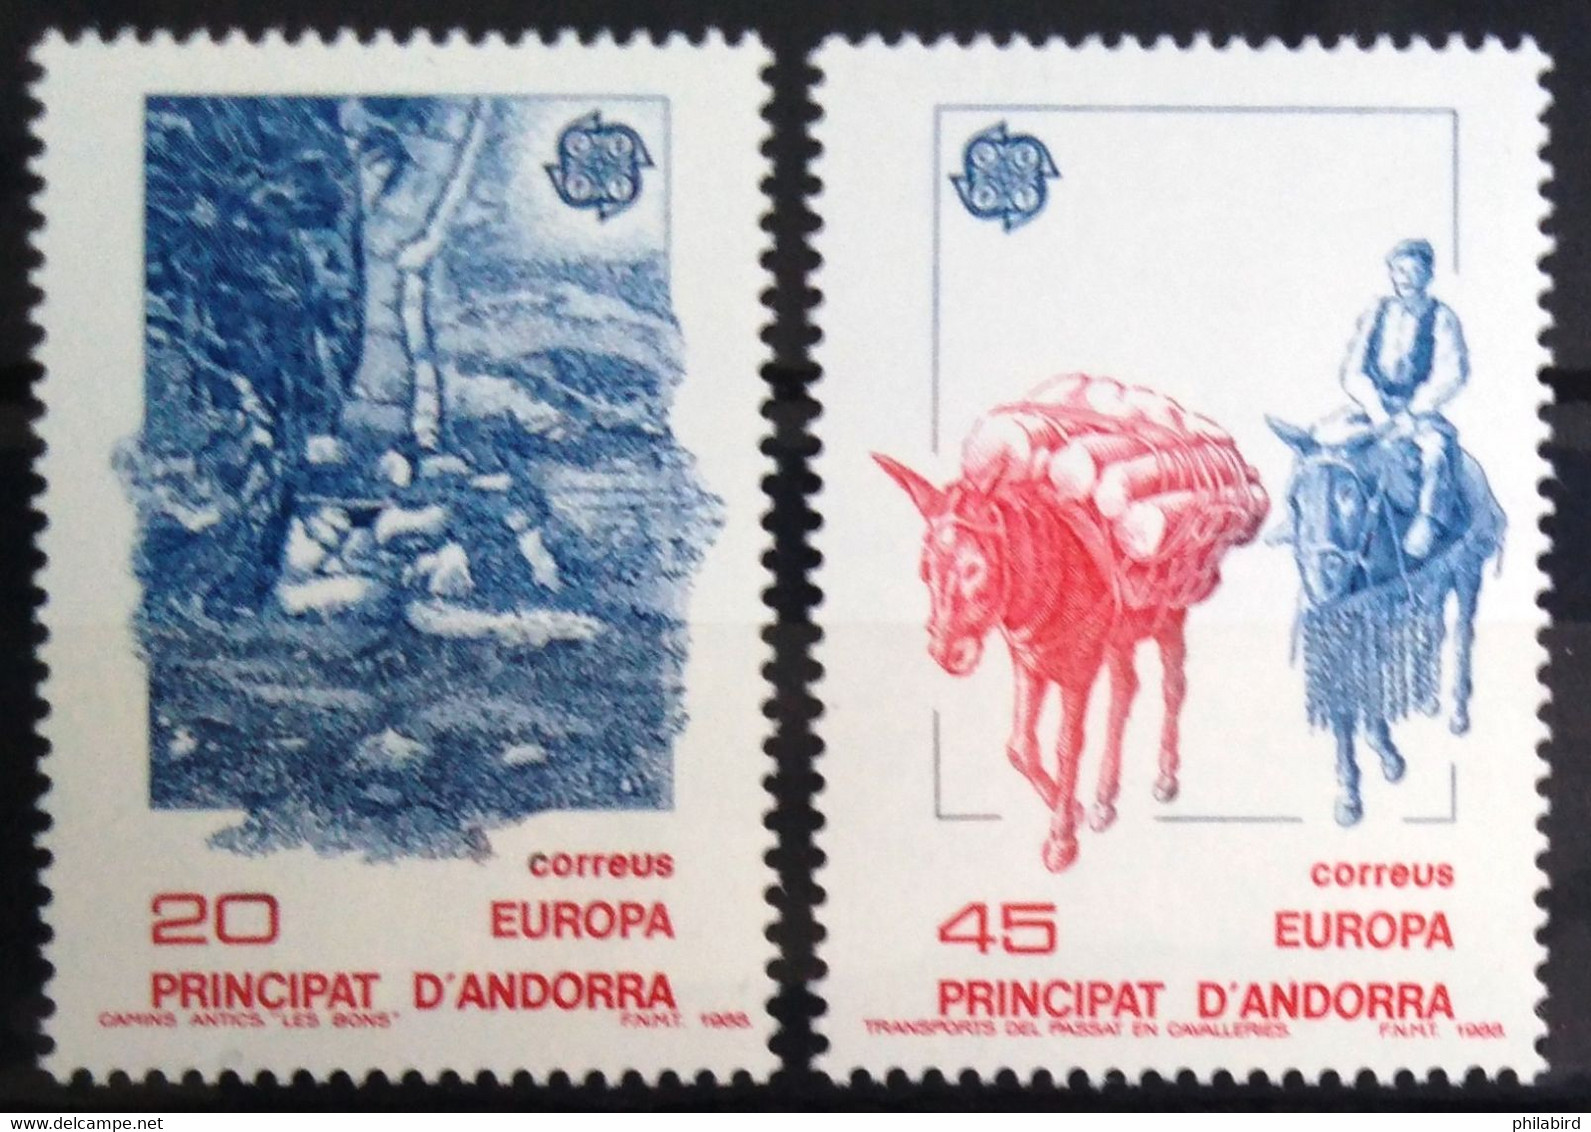 EUROPA 1988 - ANDORRE ESPAGNOL                 N° 190/191                        NEUF** - 1988